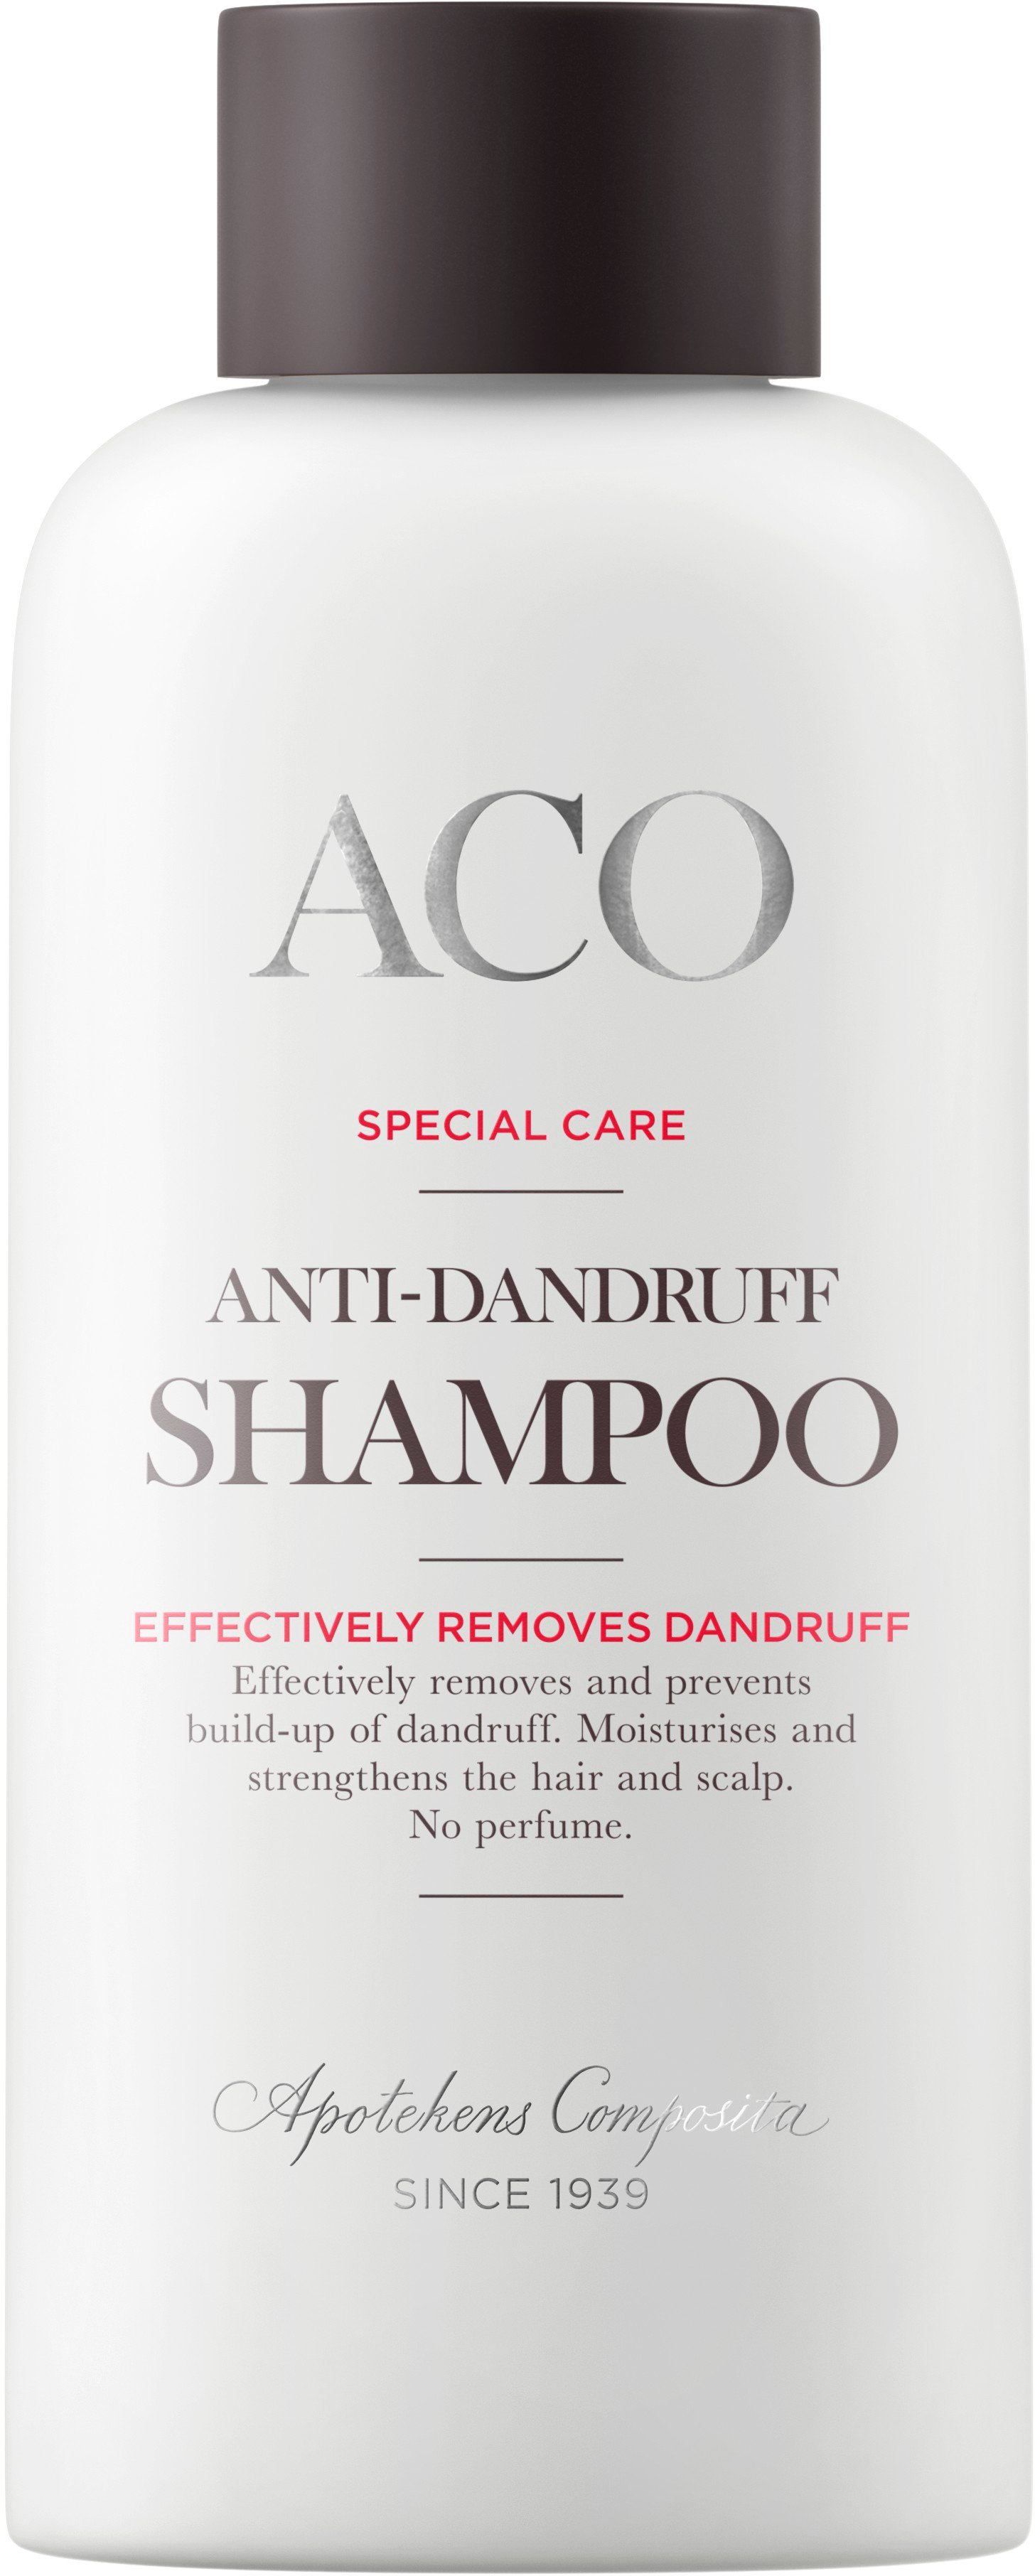 Aco Body Special Care Anti Dandruff No Parfume Shampoo Mot Mjäll 200 ml